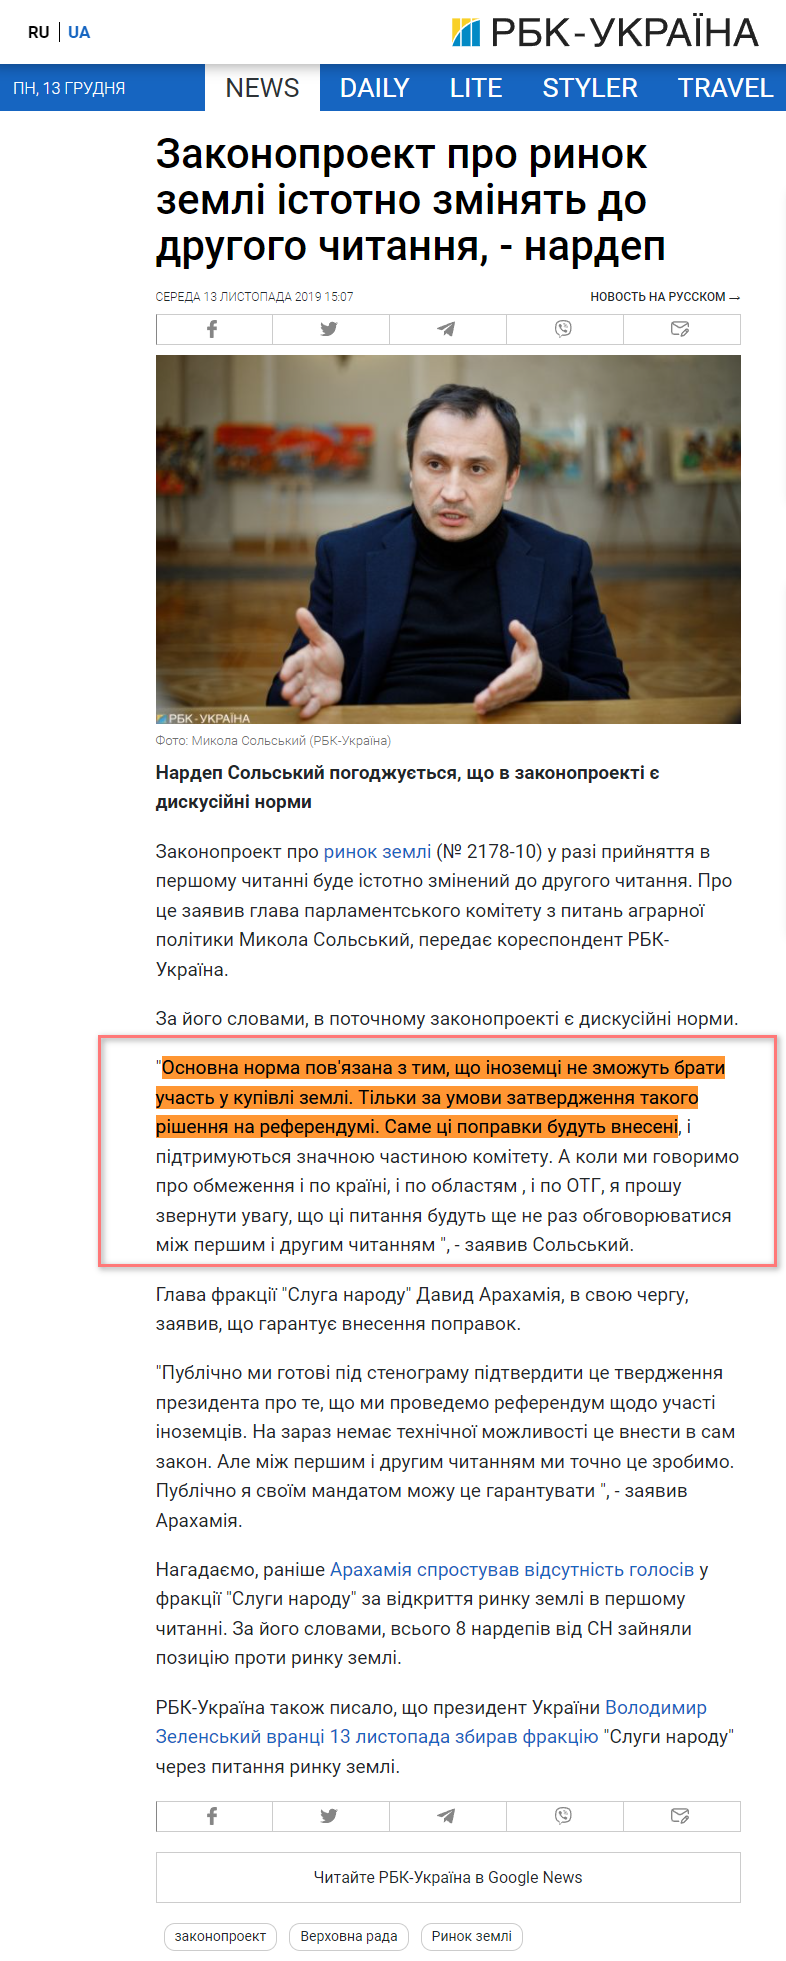 https://www.rbc.ua/ukr/news/zakonoproekt-rynke-zemli-sushchestvenno-izmenyat-1573650427.html